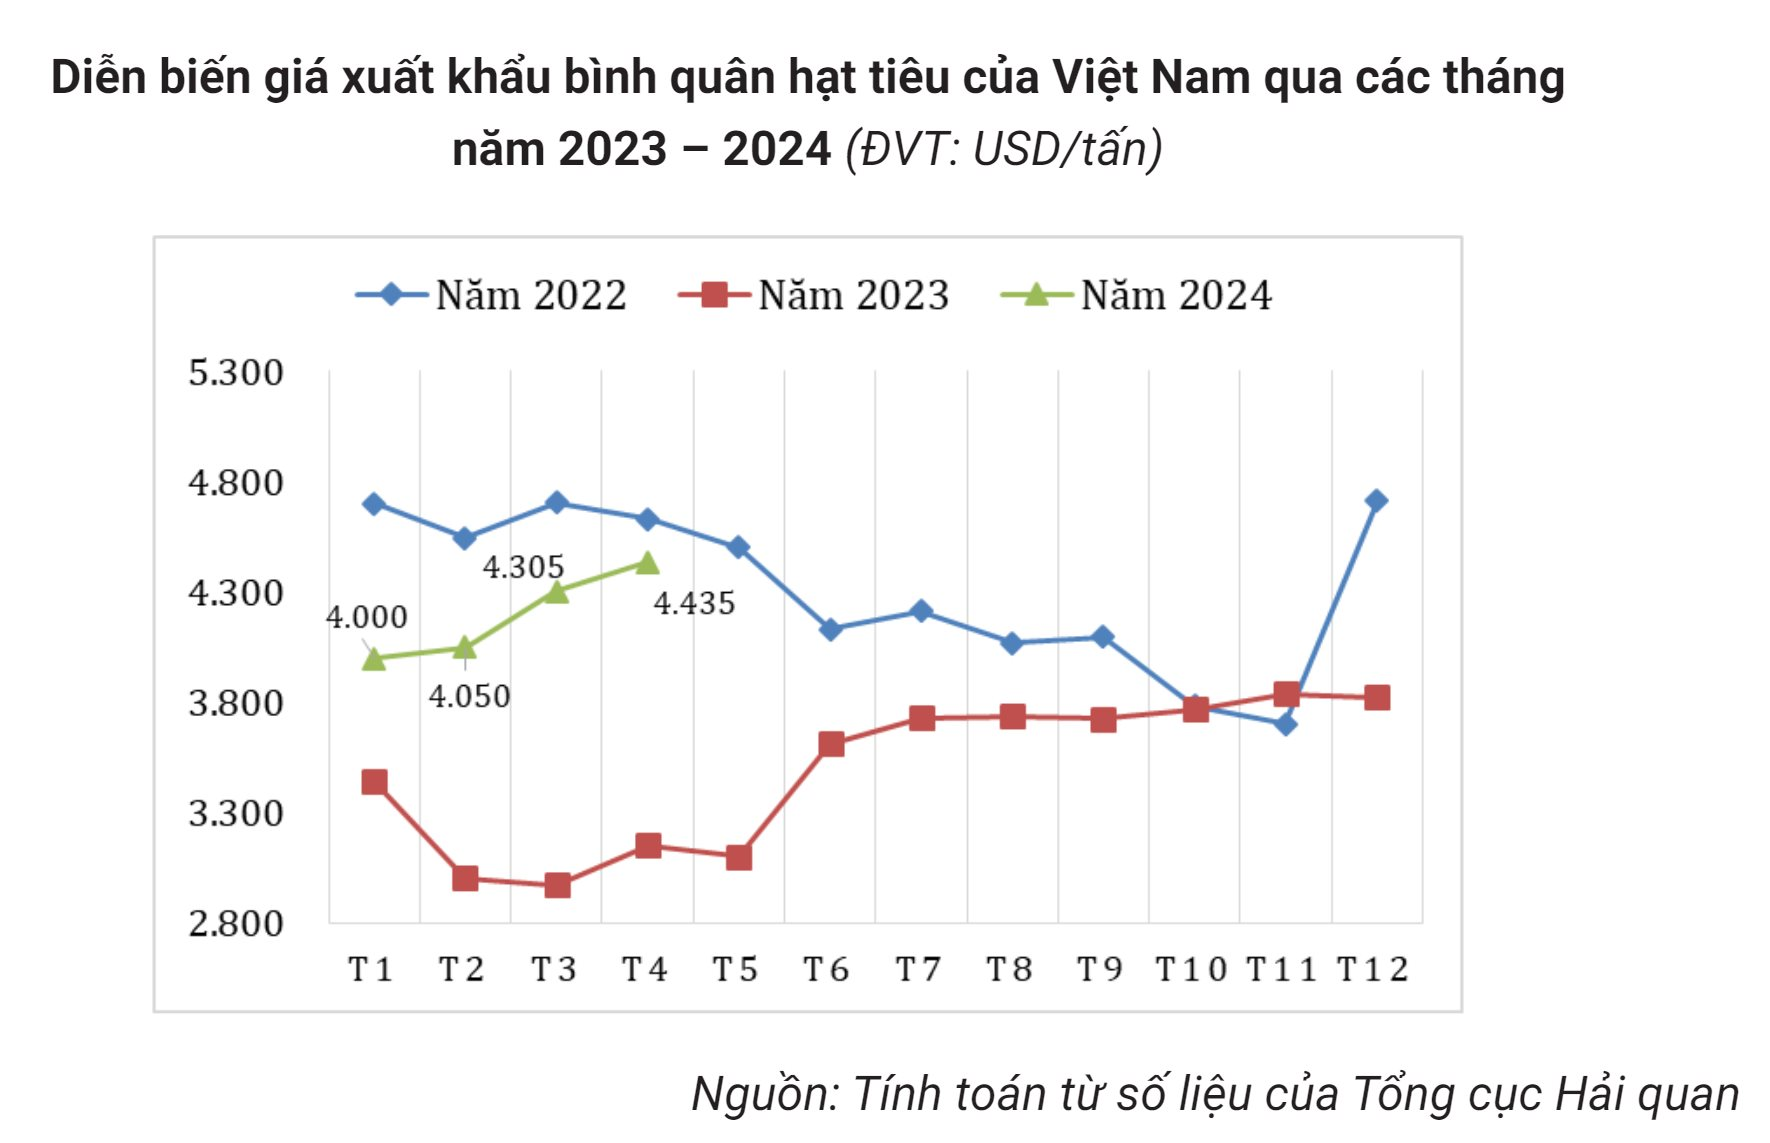 Giá liên tục phá đỉnh, 'vàng đen' của Việt Nam trở thành mặt hàng hot được nhiều nước săn lùng, dễ dàng cán đích xuất khẩu 1 tỷ USD- Ảnh 2.